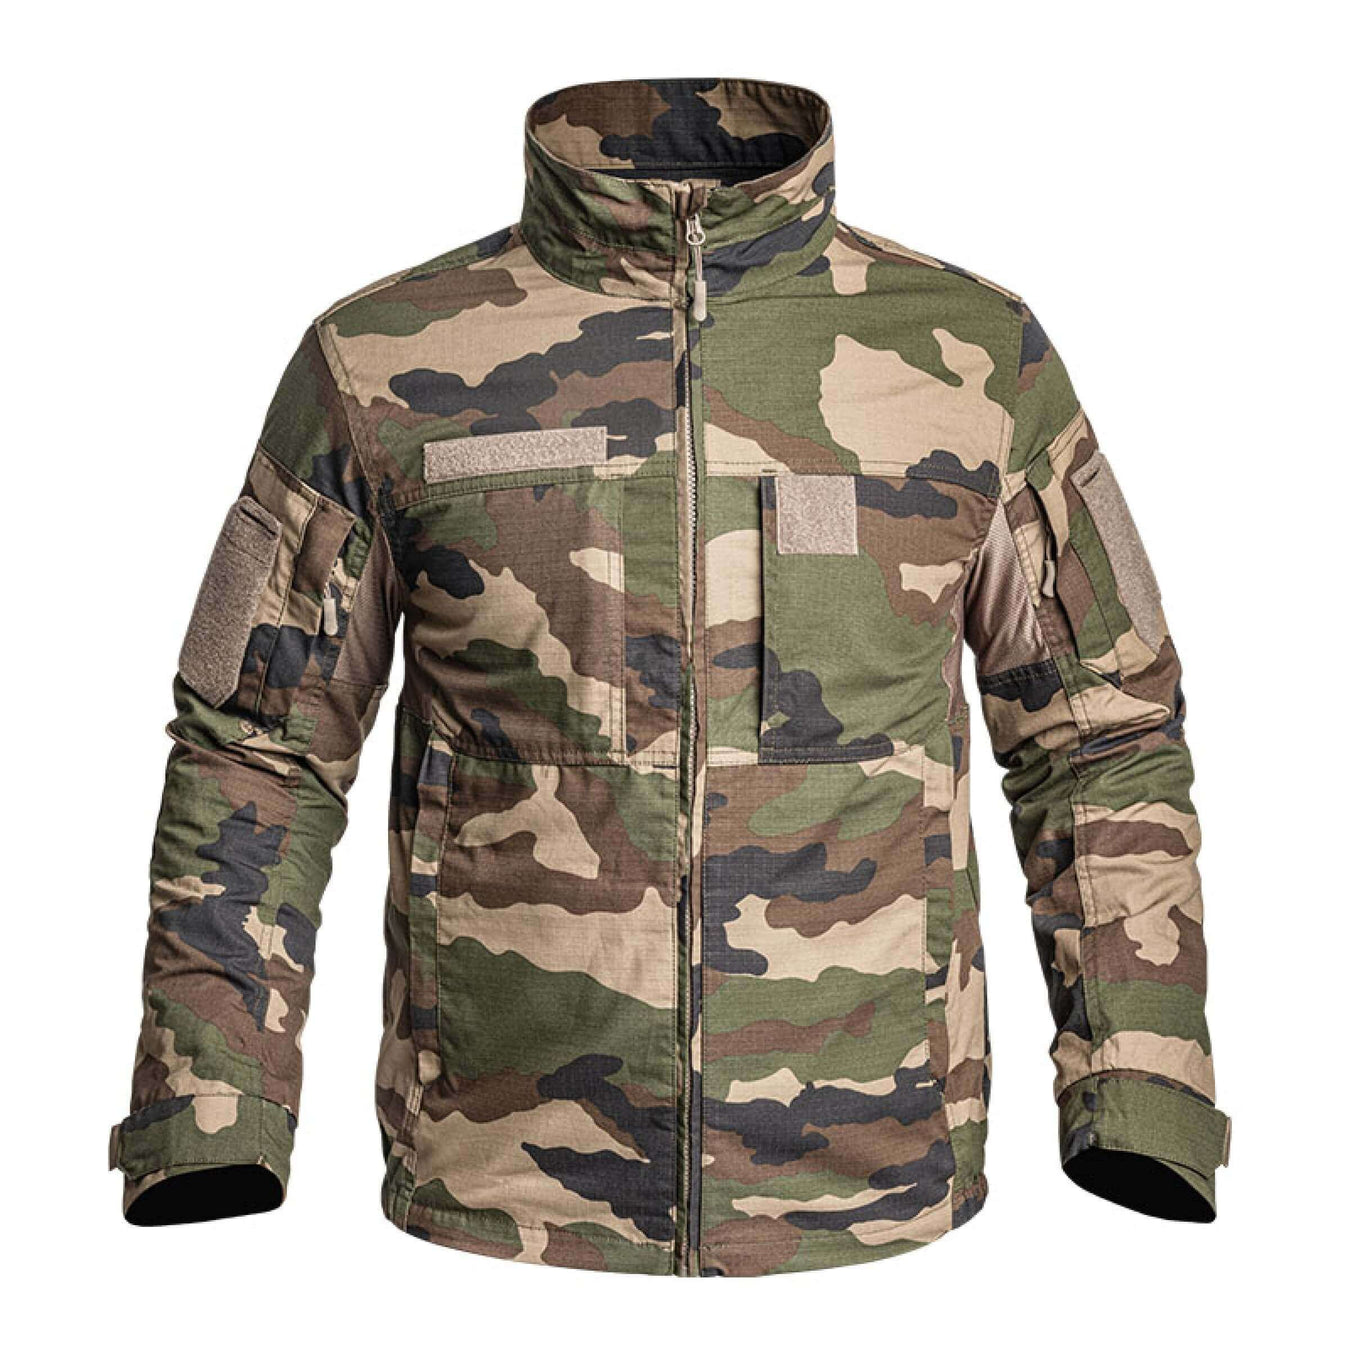 Veste Militaire, vestes courtes, longues et blousons camouflage